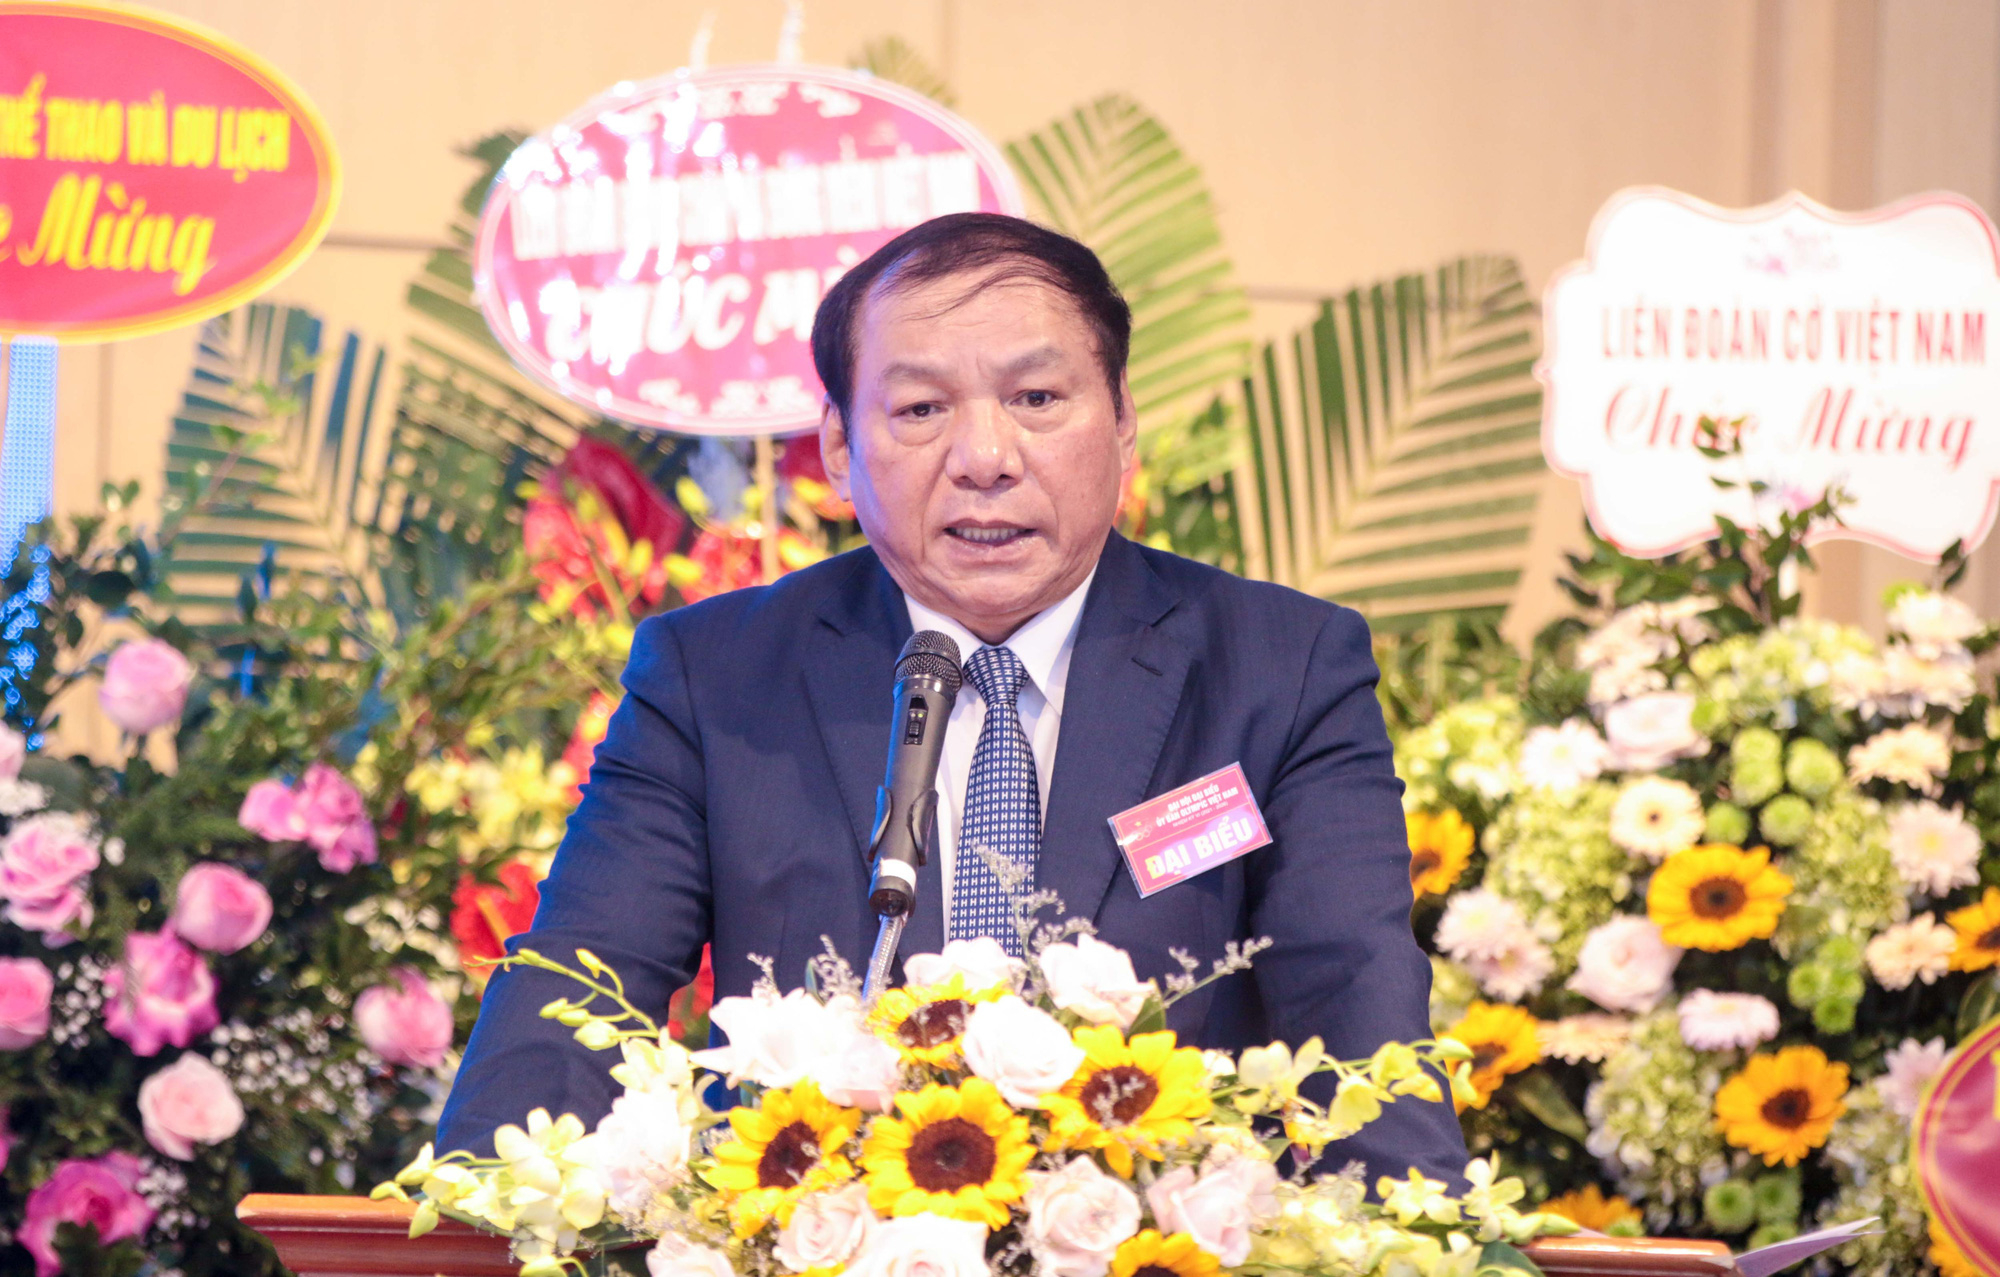 Bộ trưởng Bộ Văn hoá, Thể thao và Du lịch Nguyễn Văn Hùng được bầu là Chủ tịch Uỷ ban Olympic Việt Nam nhiệm kỳ VI - Ảnh 1.